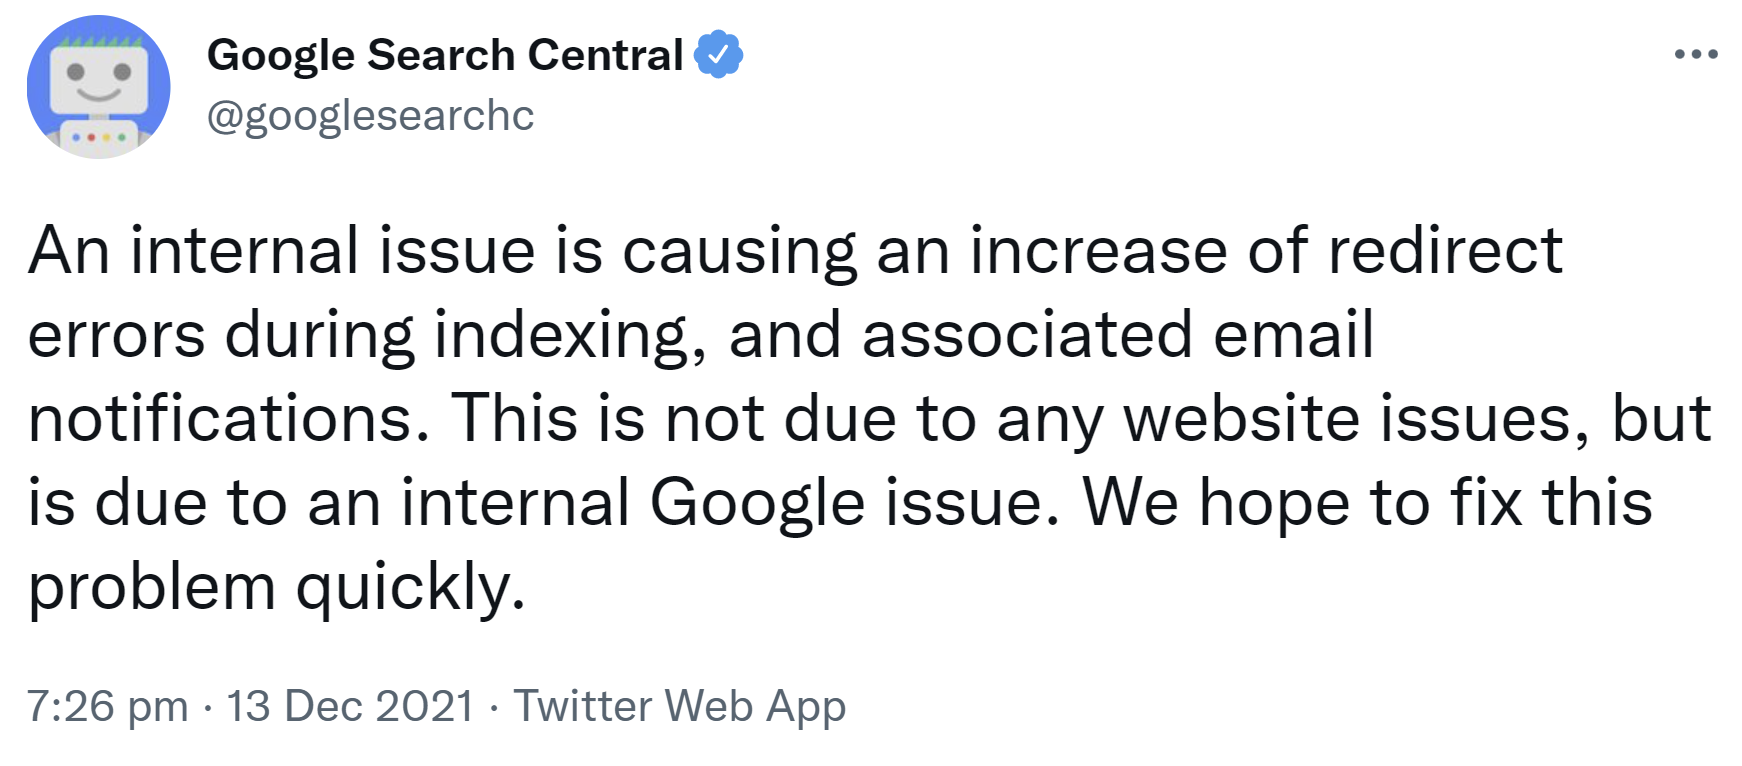 Google bestätigt, dass ein internes Problem die Ursache der gemeldeten Umleitungsfehler ist